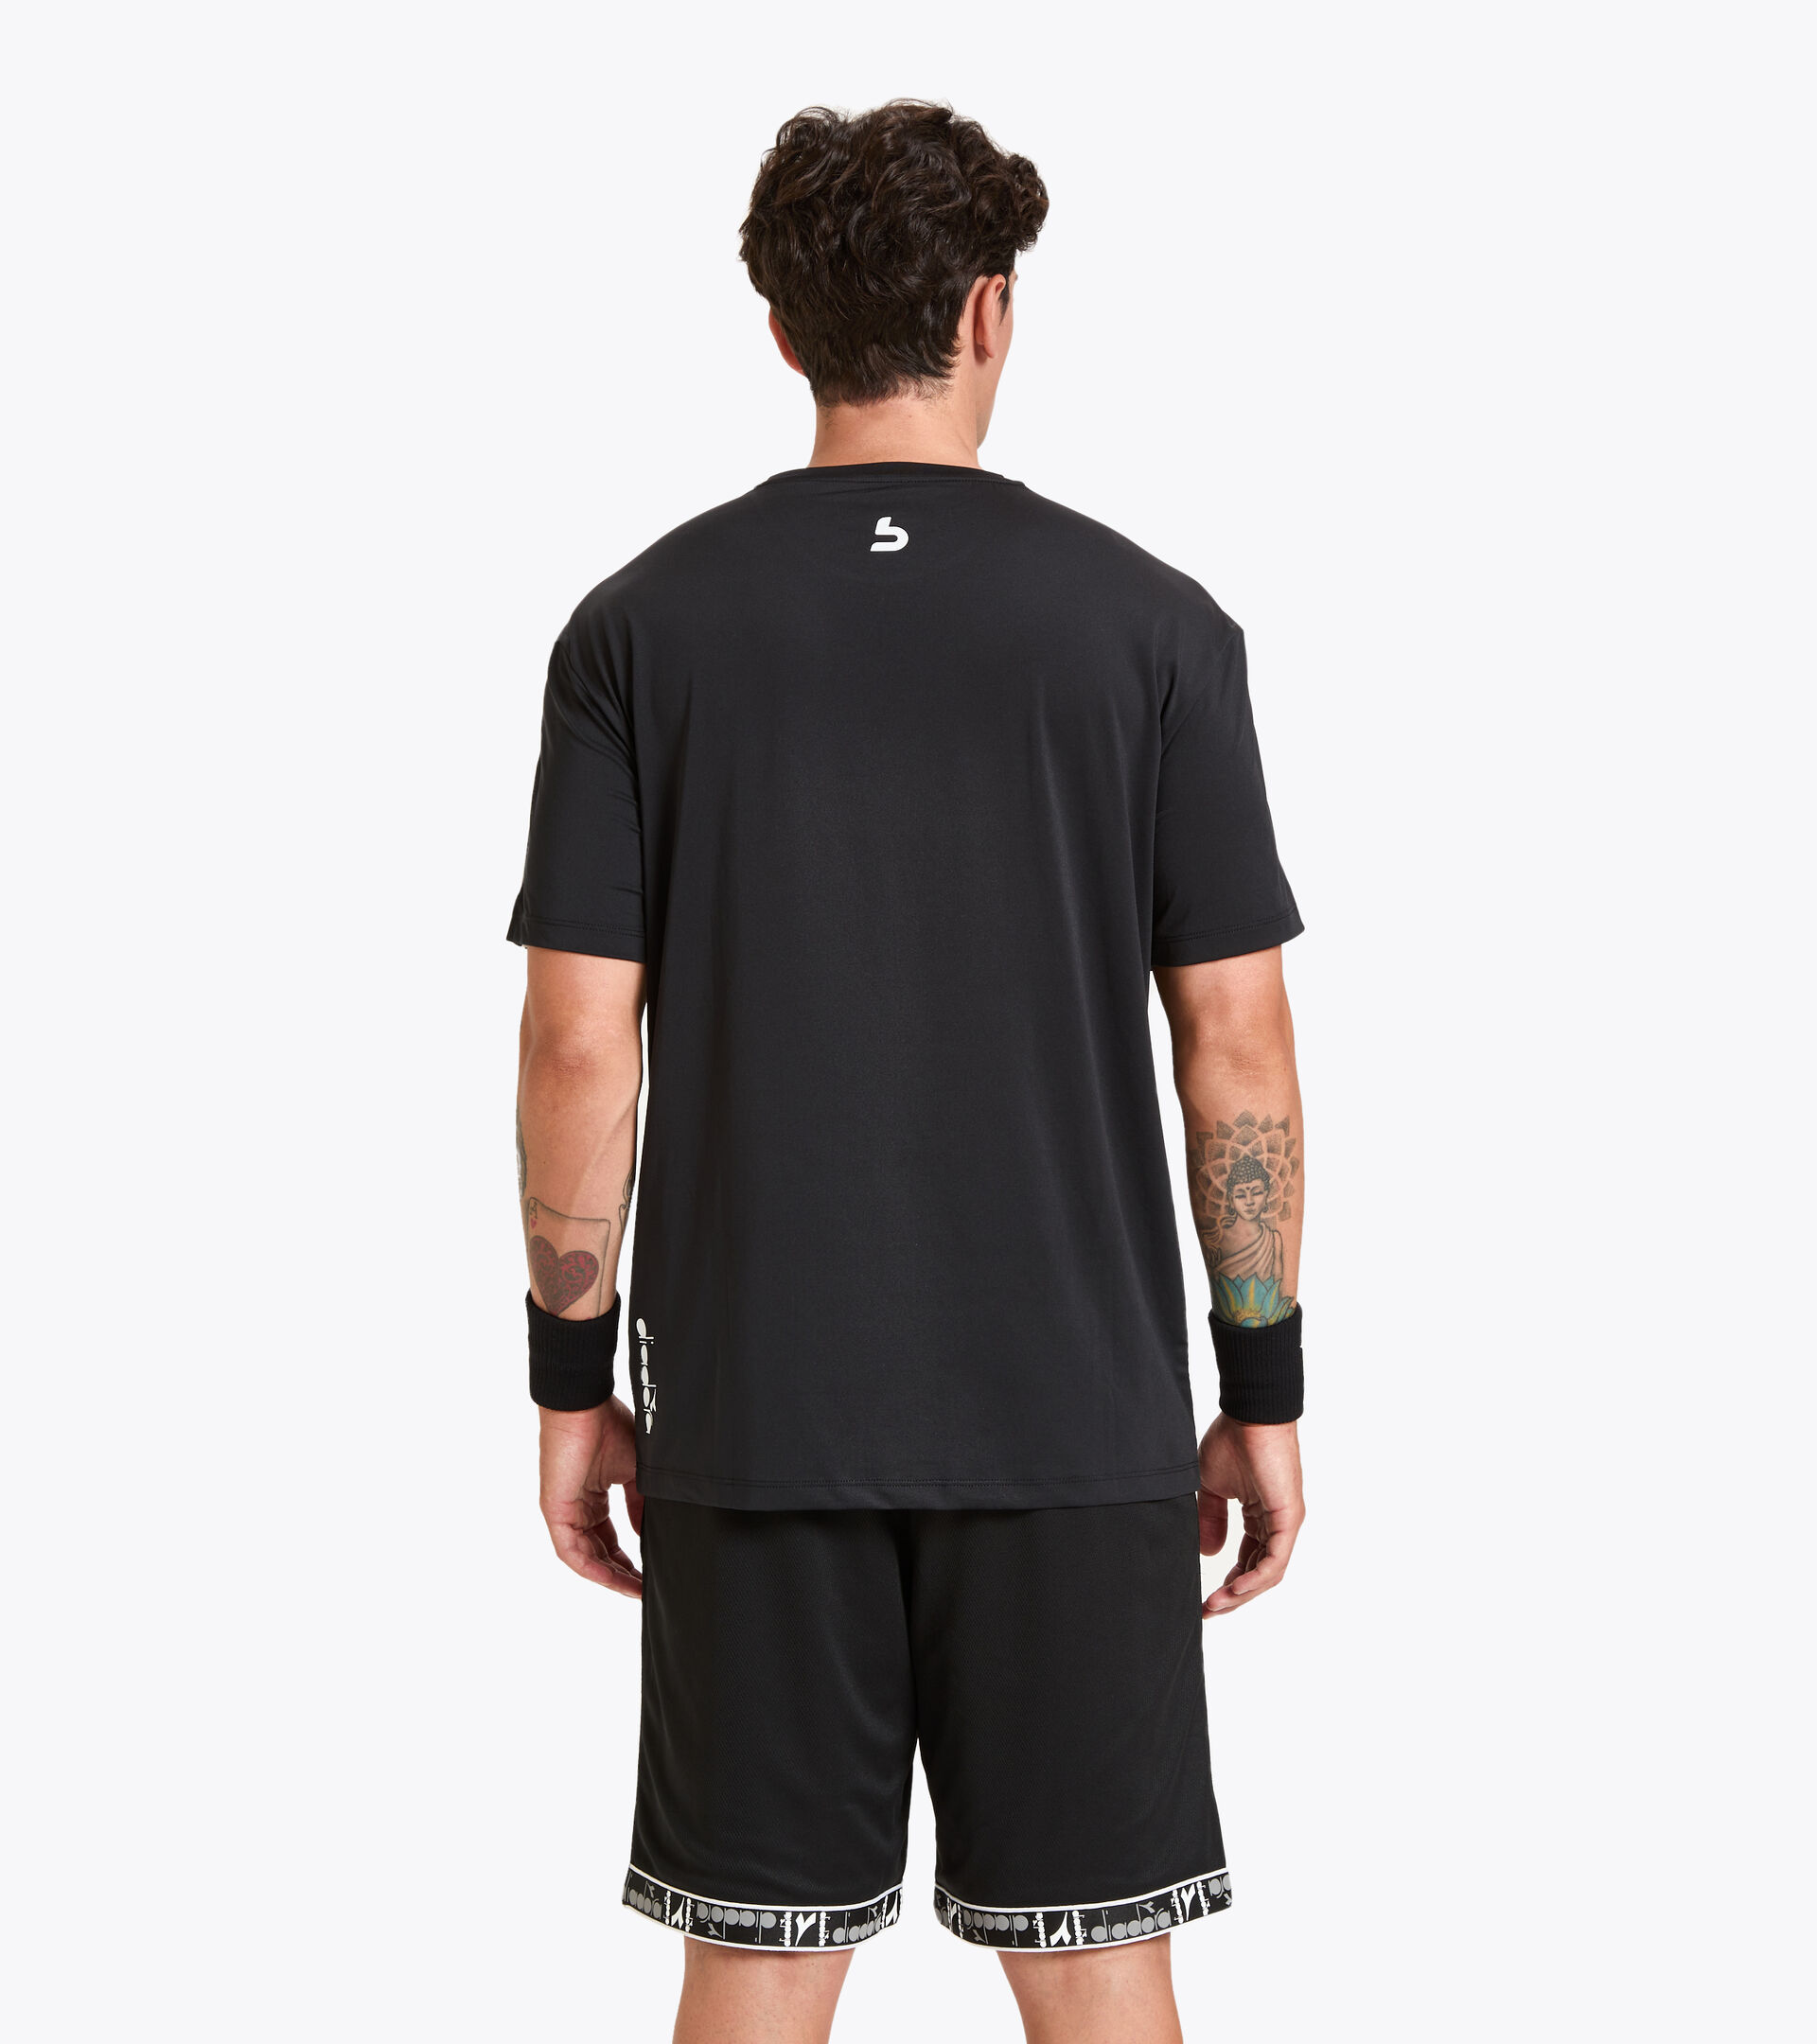 Workout-T-Shirt for men SS T-SHIRT BUDDYFIT BLACK - Diadora